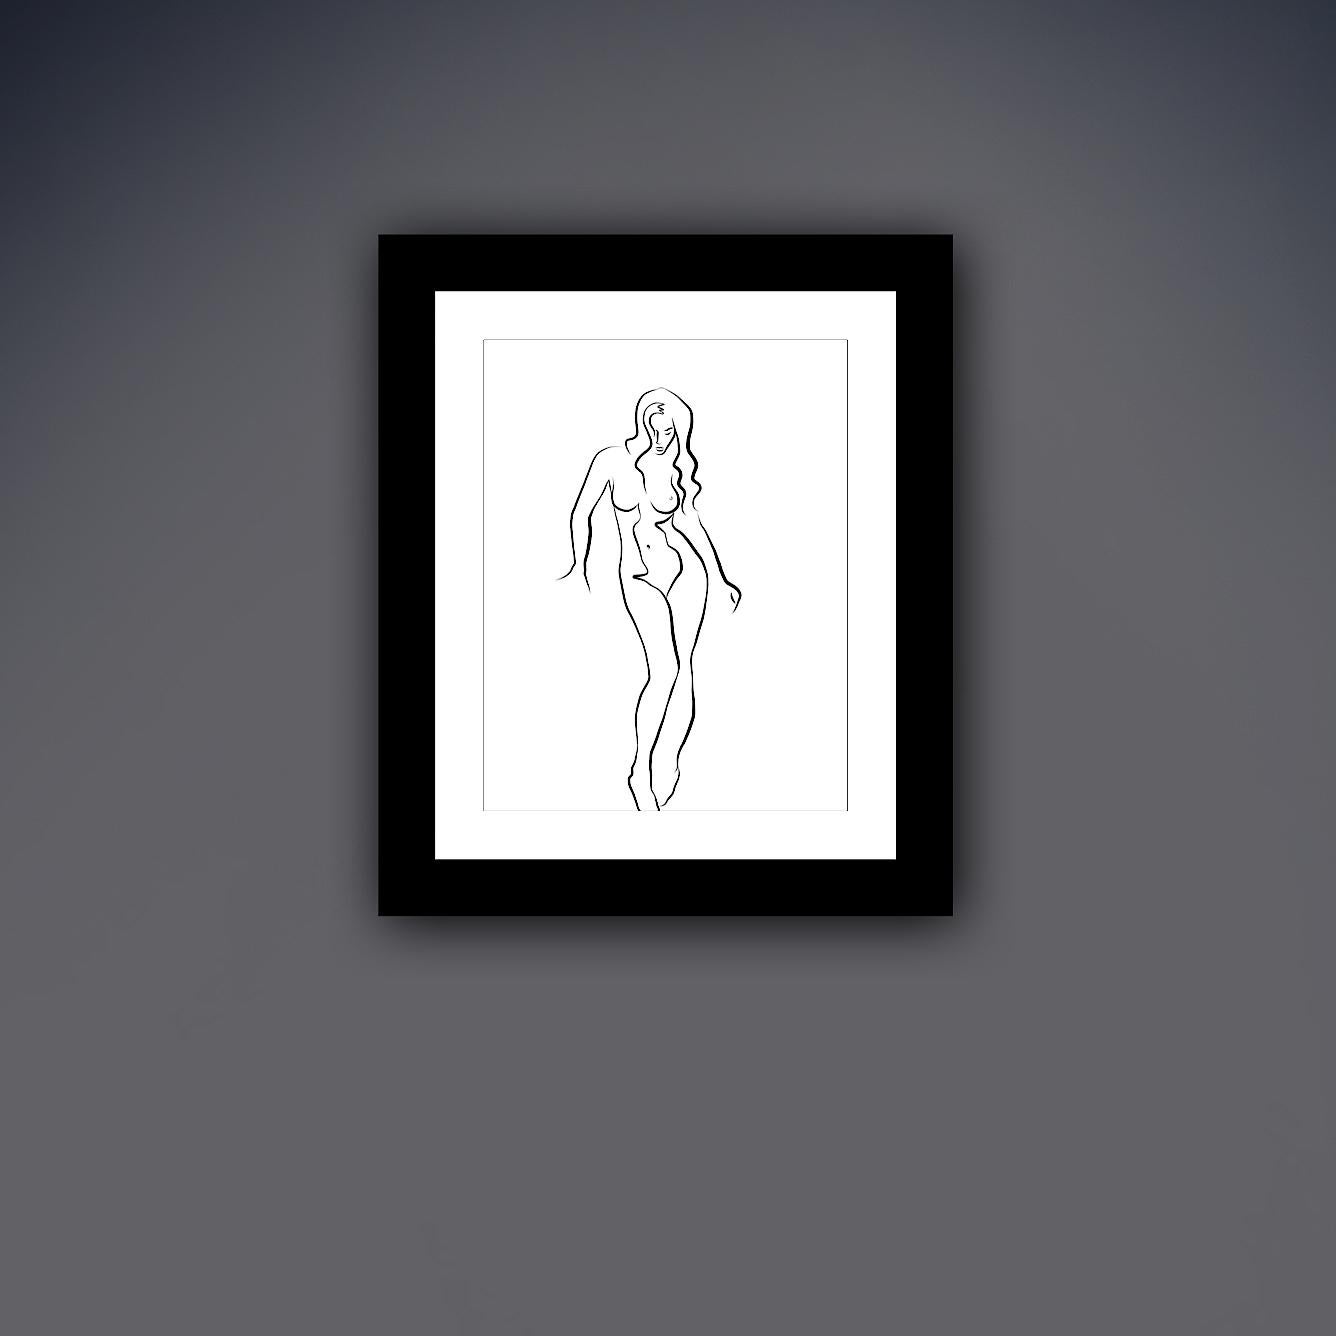 Haiku #58 - Digitale Vektor-Zeichnung Stehender weiblicher Akt von vorne gesehen (Zeitgenössisch), Print, von Michael Binkley